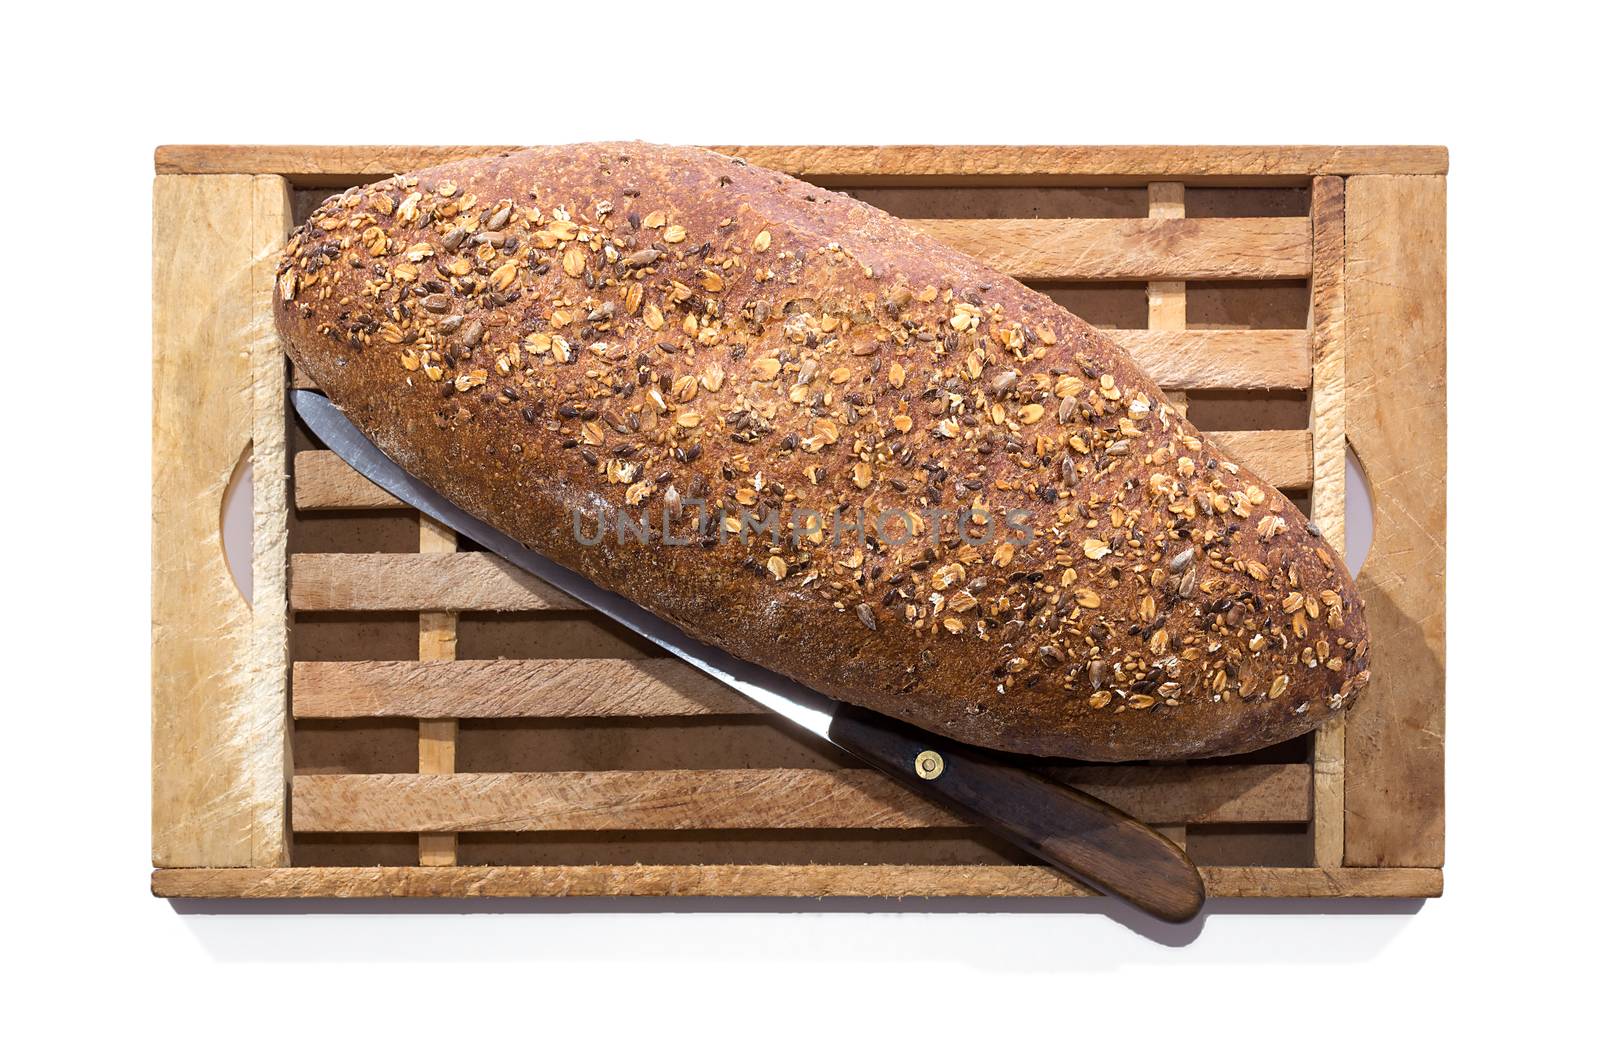 Whole Grain Bread on board by milinz